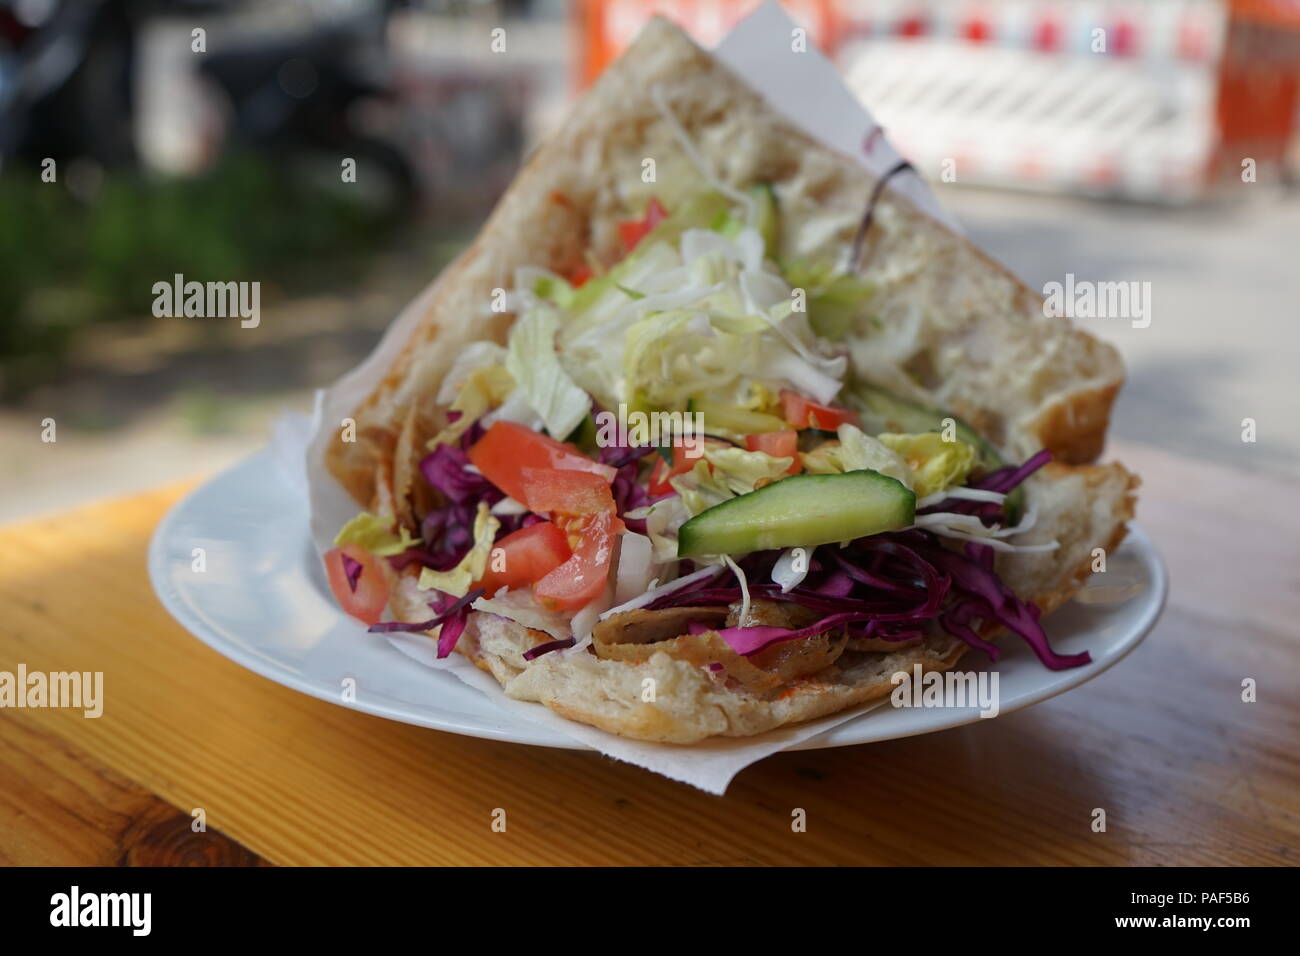 Berlin Döner Kebap/Kebab-turkish fast food Stock Photo